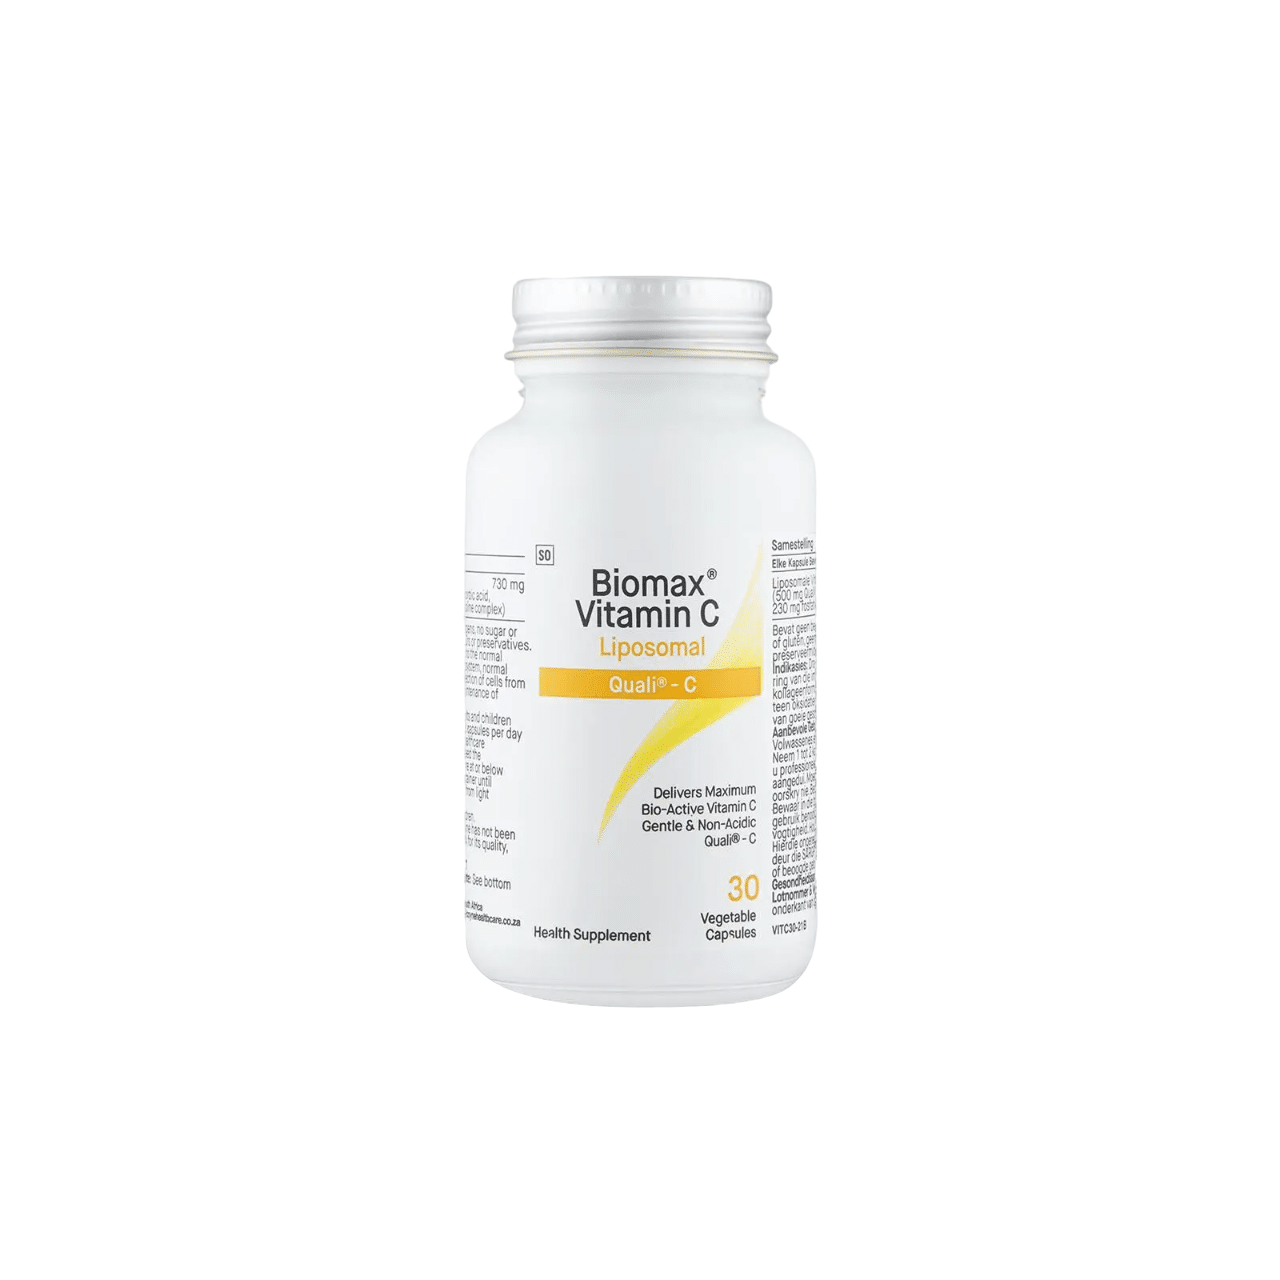 COYNE - Biomax® Vitamin C Liposomal 30's